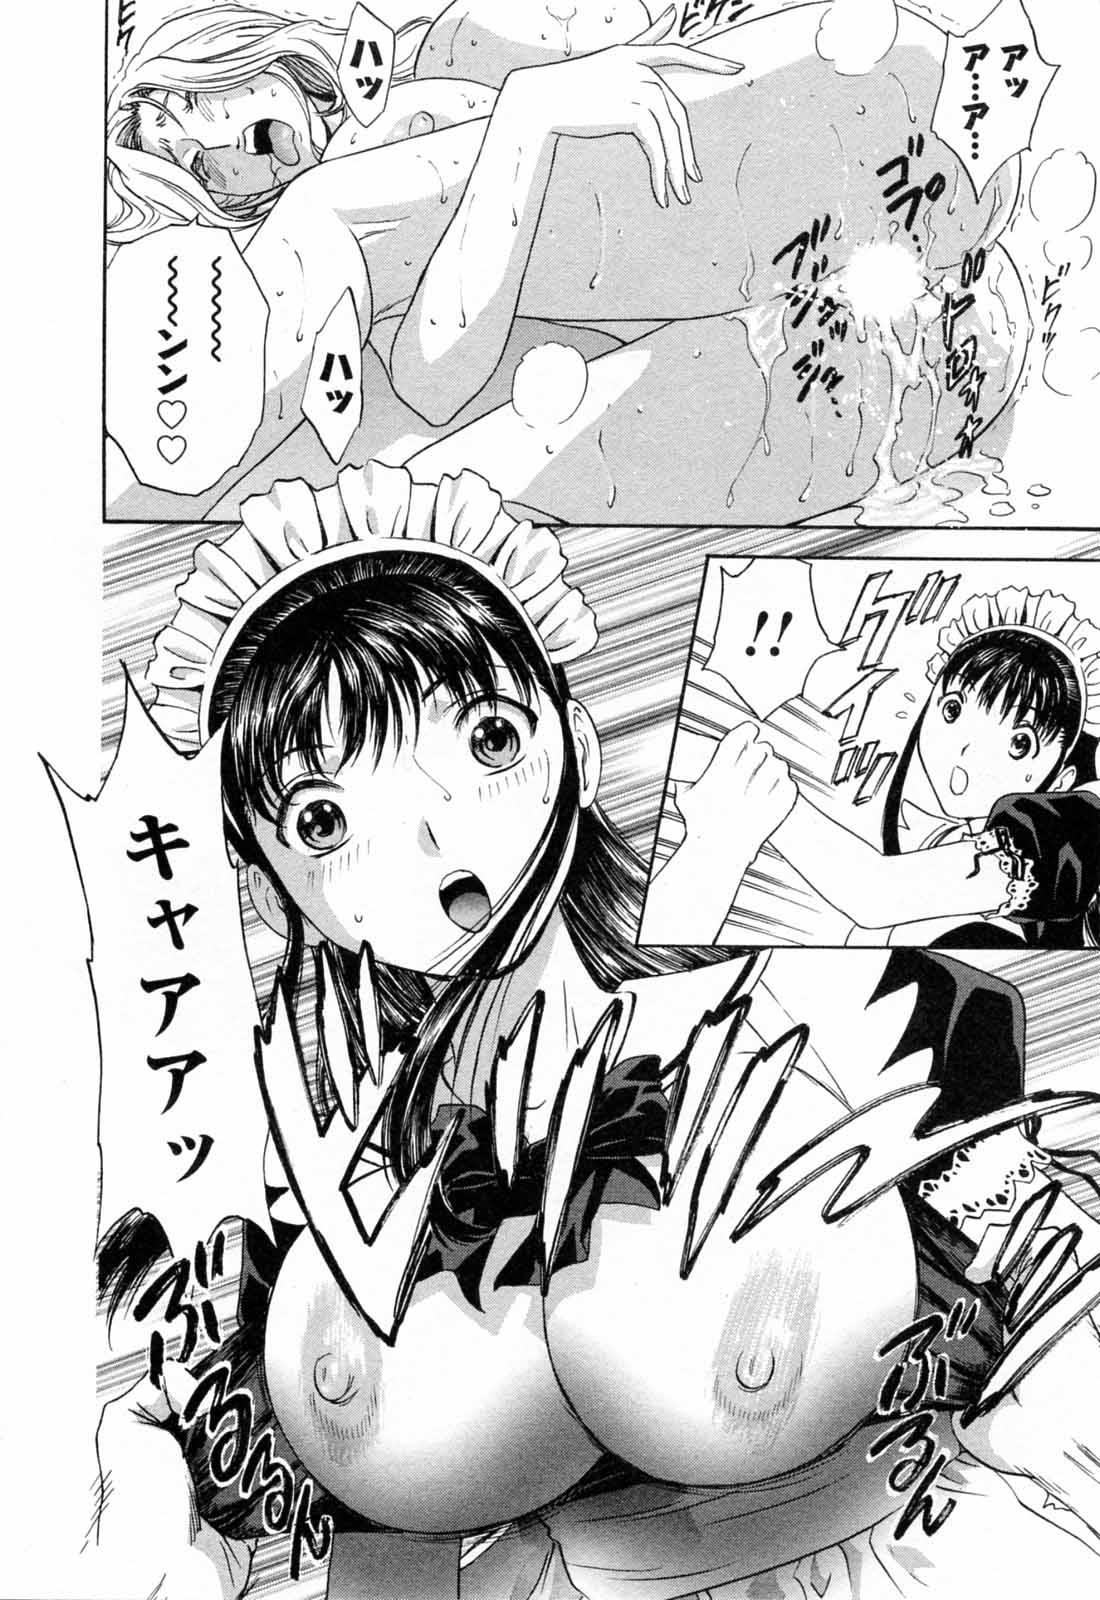 [Hidemaru] Mo-Retsu! Boin Sensei (Boing Boing Teacher) Vol.5 85